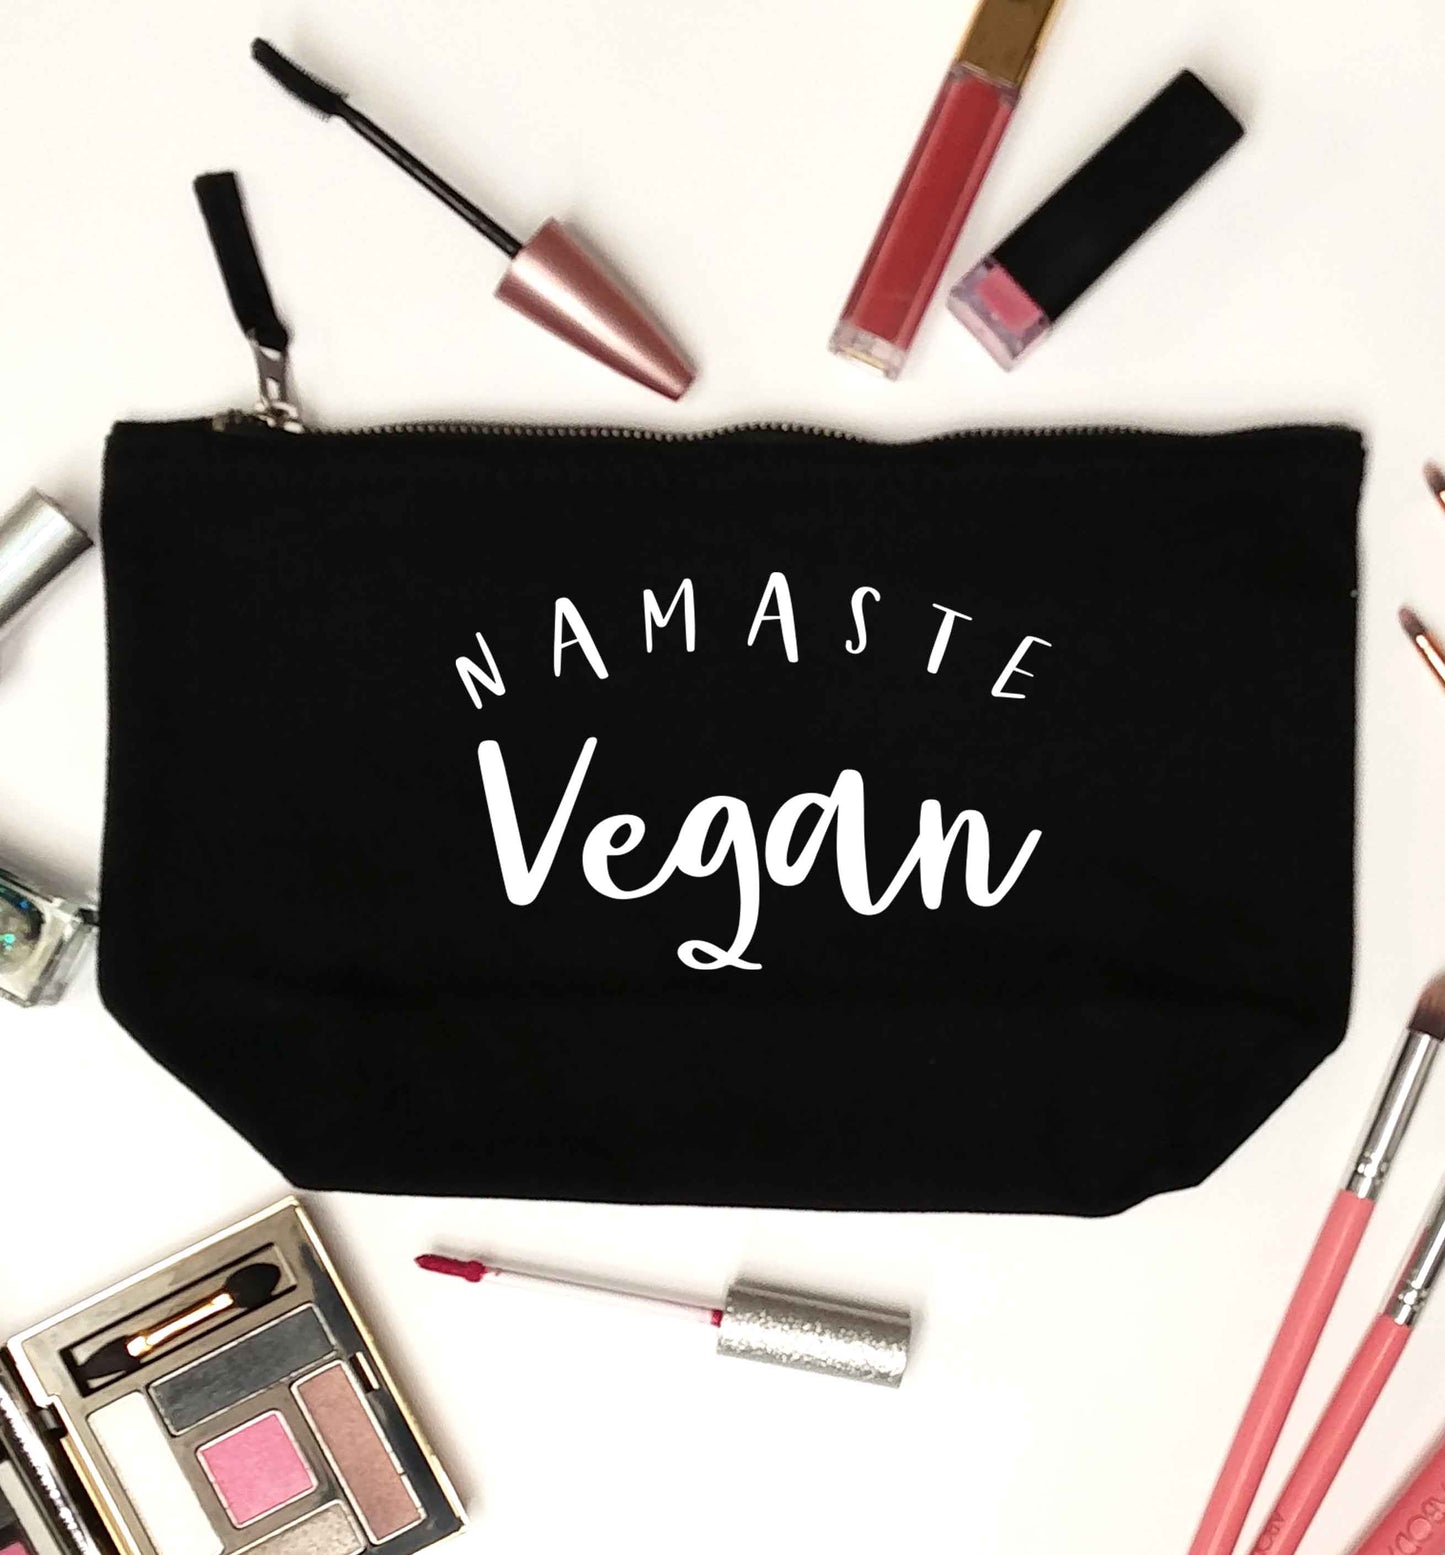 Namaste vegan black makeup bag